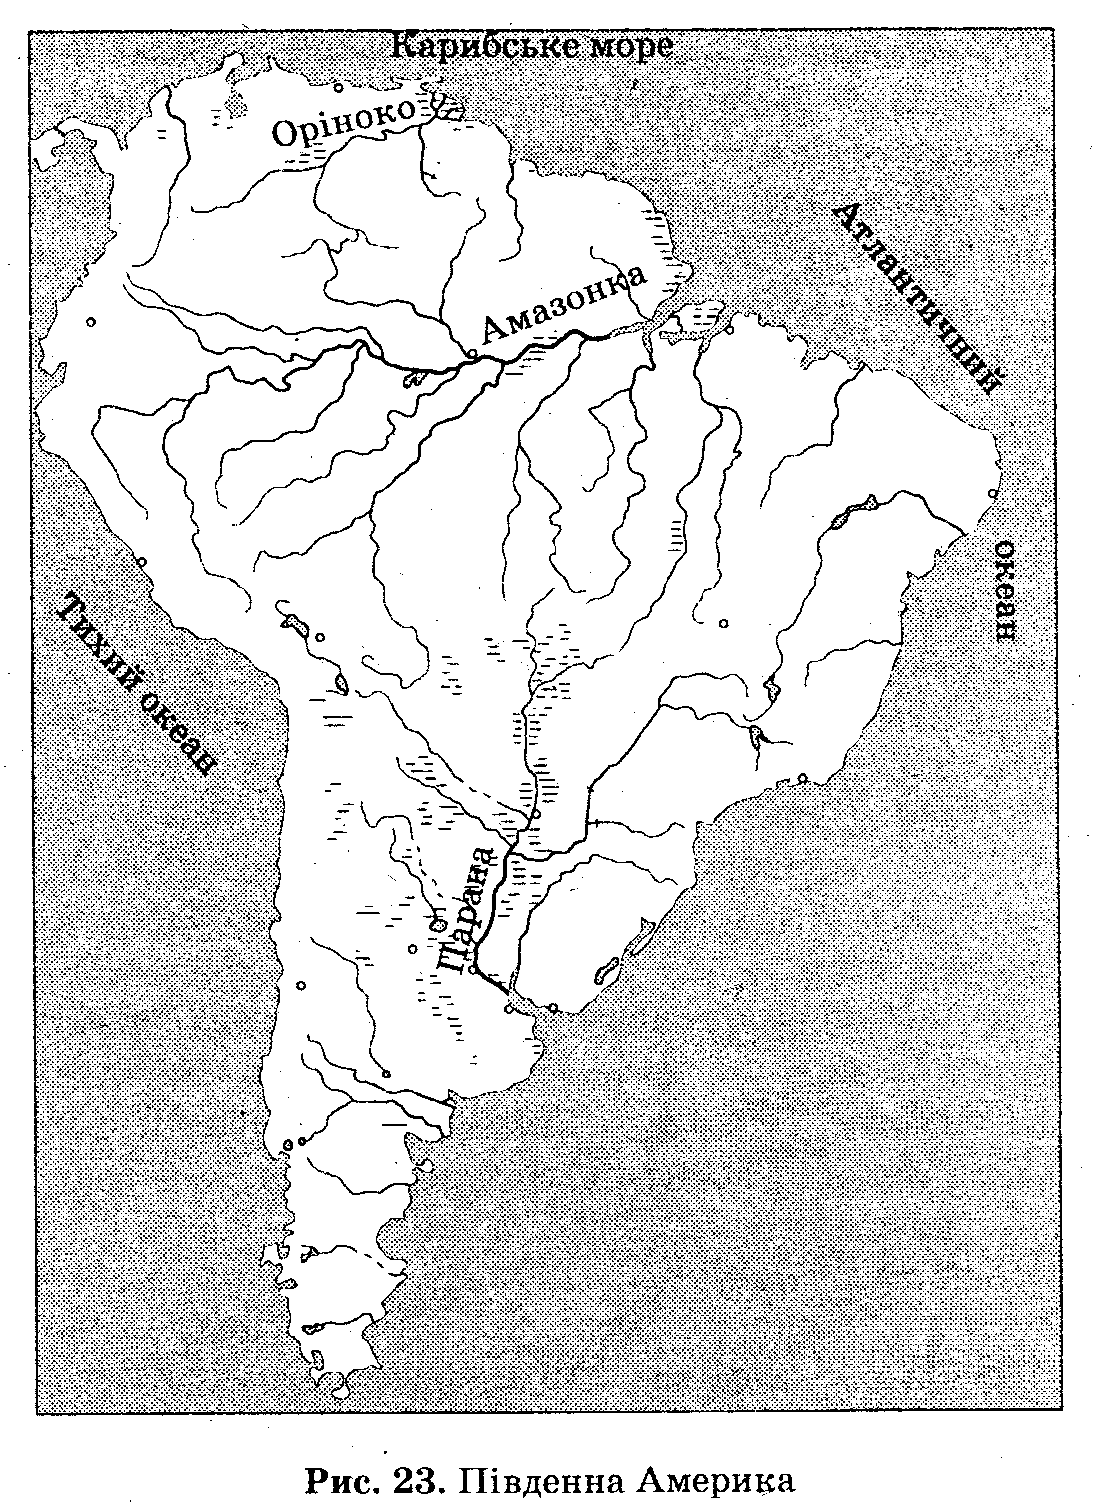 Крупнейшие реки южной америки на контурной карте. Крупнейший реки и озера Южной Америки на карте. Озера Южной Америки на контурной карте. Реки Южной Америки на контурной карте. Крупные реки и озера Южной Америки на контурной карте.